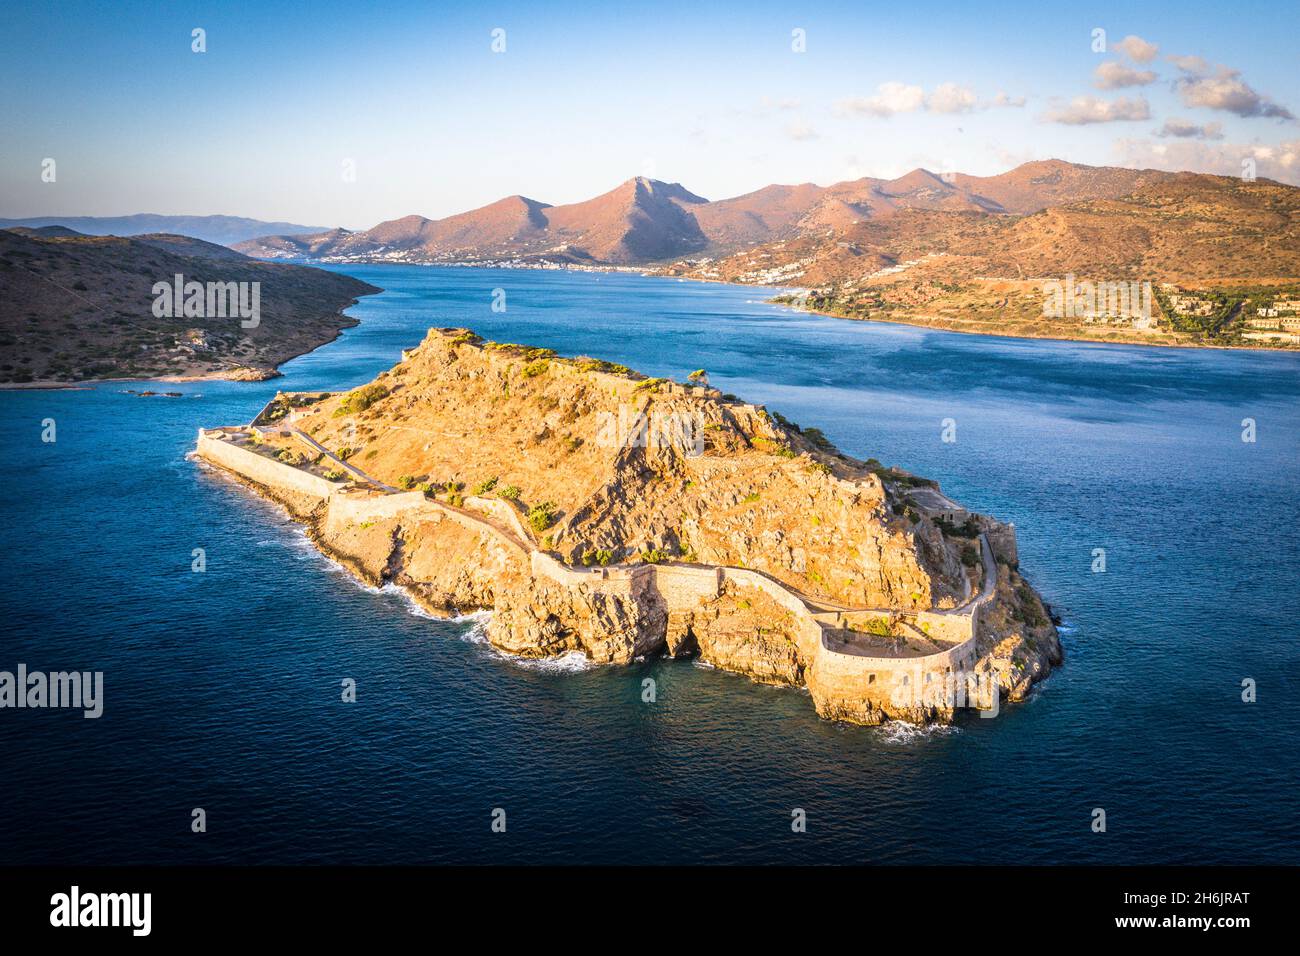 Vue aérienne de l'île de Spinalonga forteresse vénitienne et de la baie de Mirabello à l'aube, préfecture de Lasithi, Crète, Iles grecques, Grèce,Europe Banque D'Images